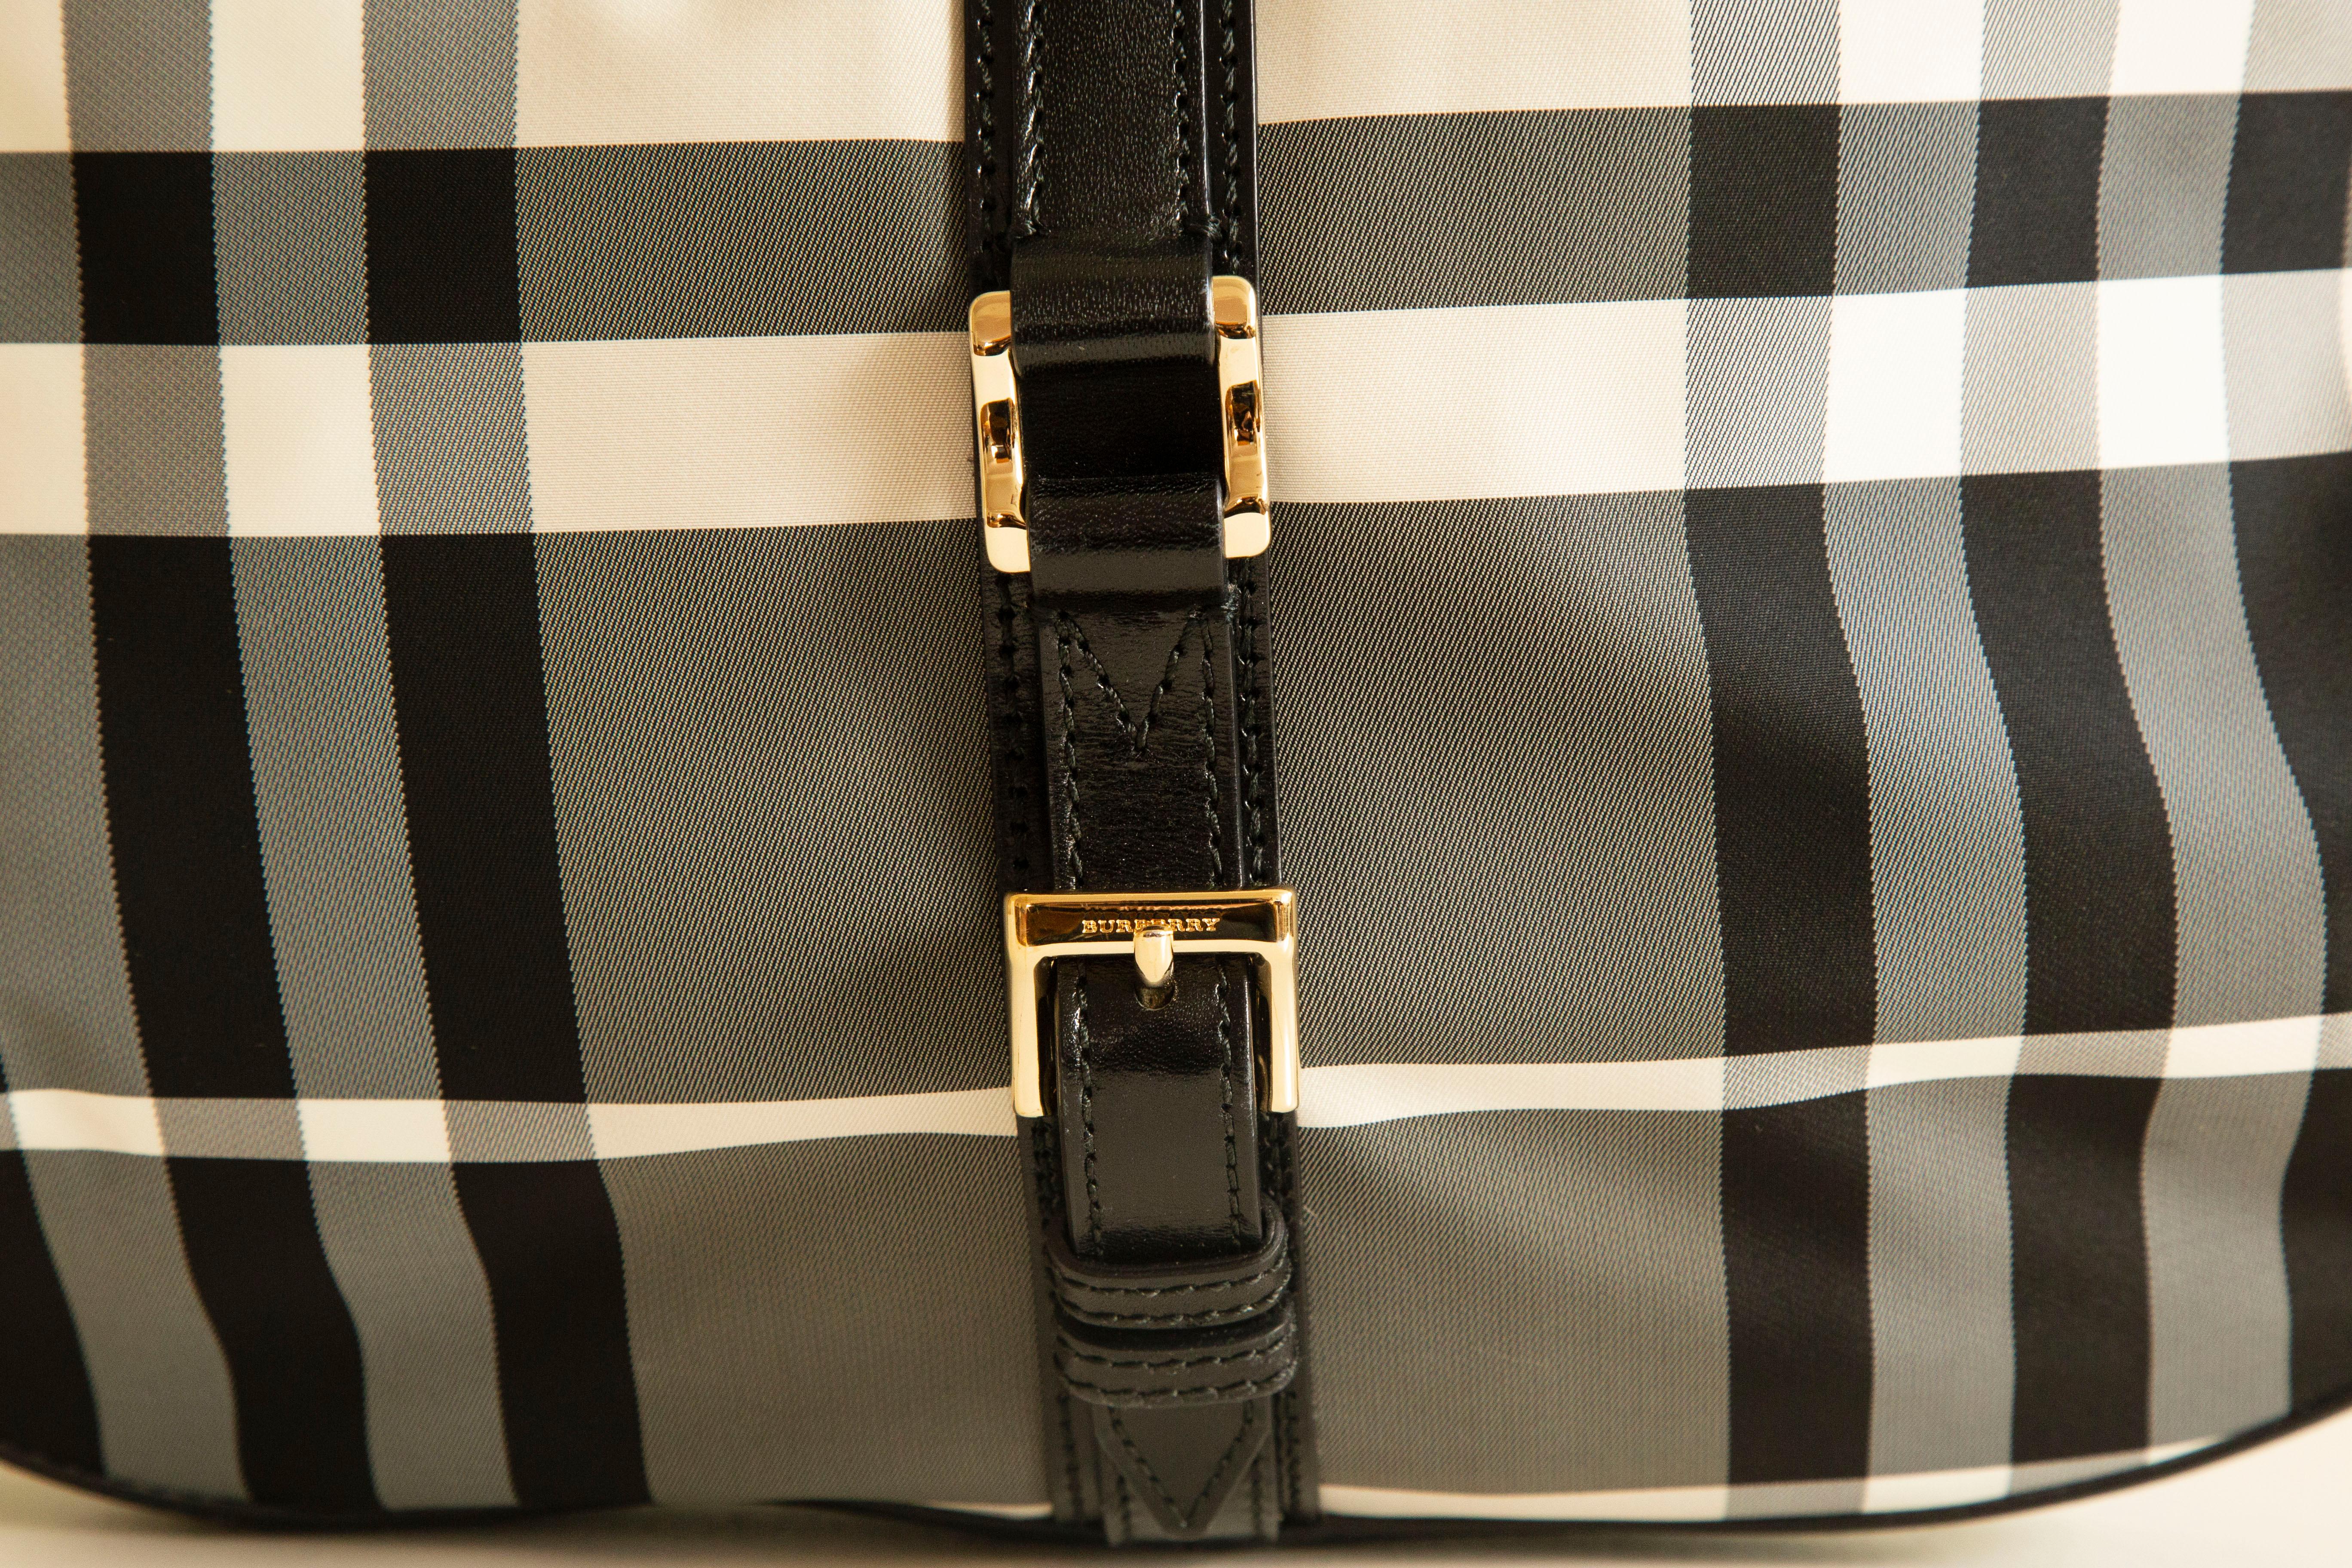 Sac à bandoulière/hobo bag spacieux de Burberry en nylon à motif Nova Check noir/gris/blanc. Le sac est orné d'une bordure en cuir noir et de ferrures dorées. L'intérieur se compose d'un compartiment principal et de trois poches latérales, dont